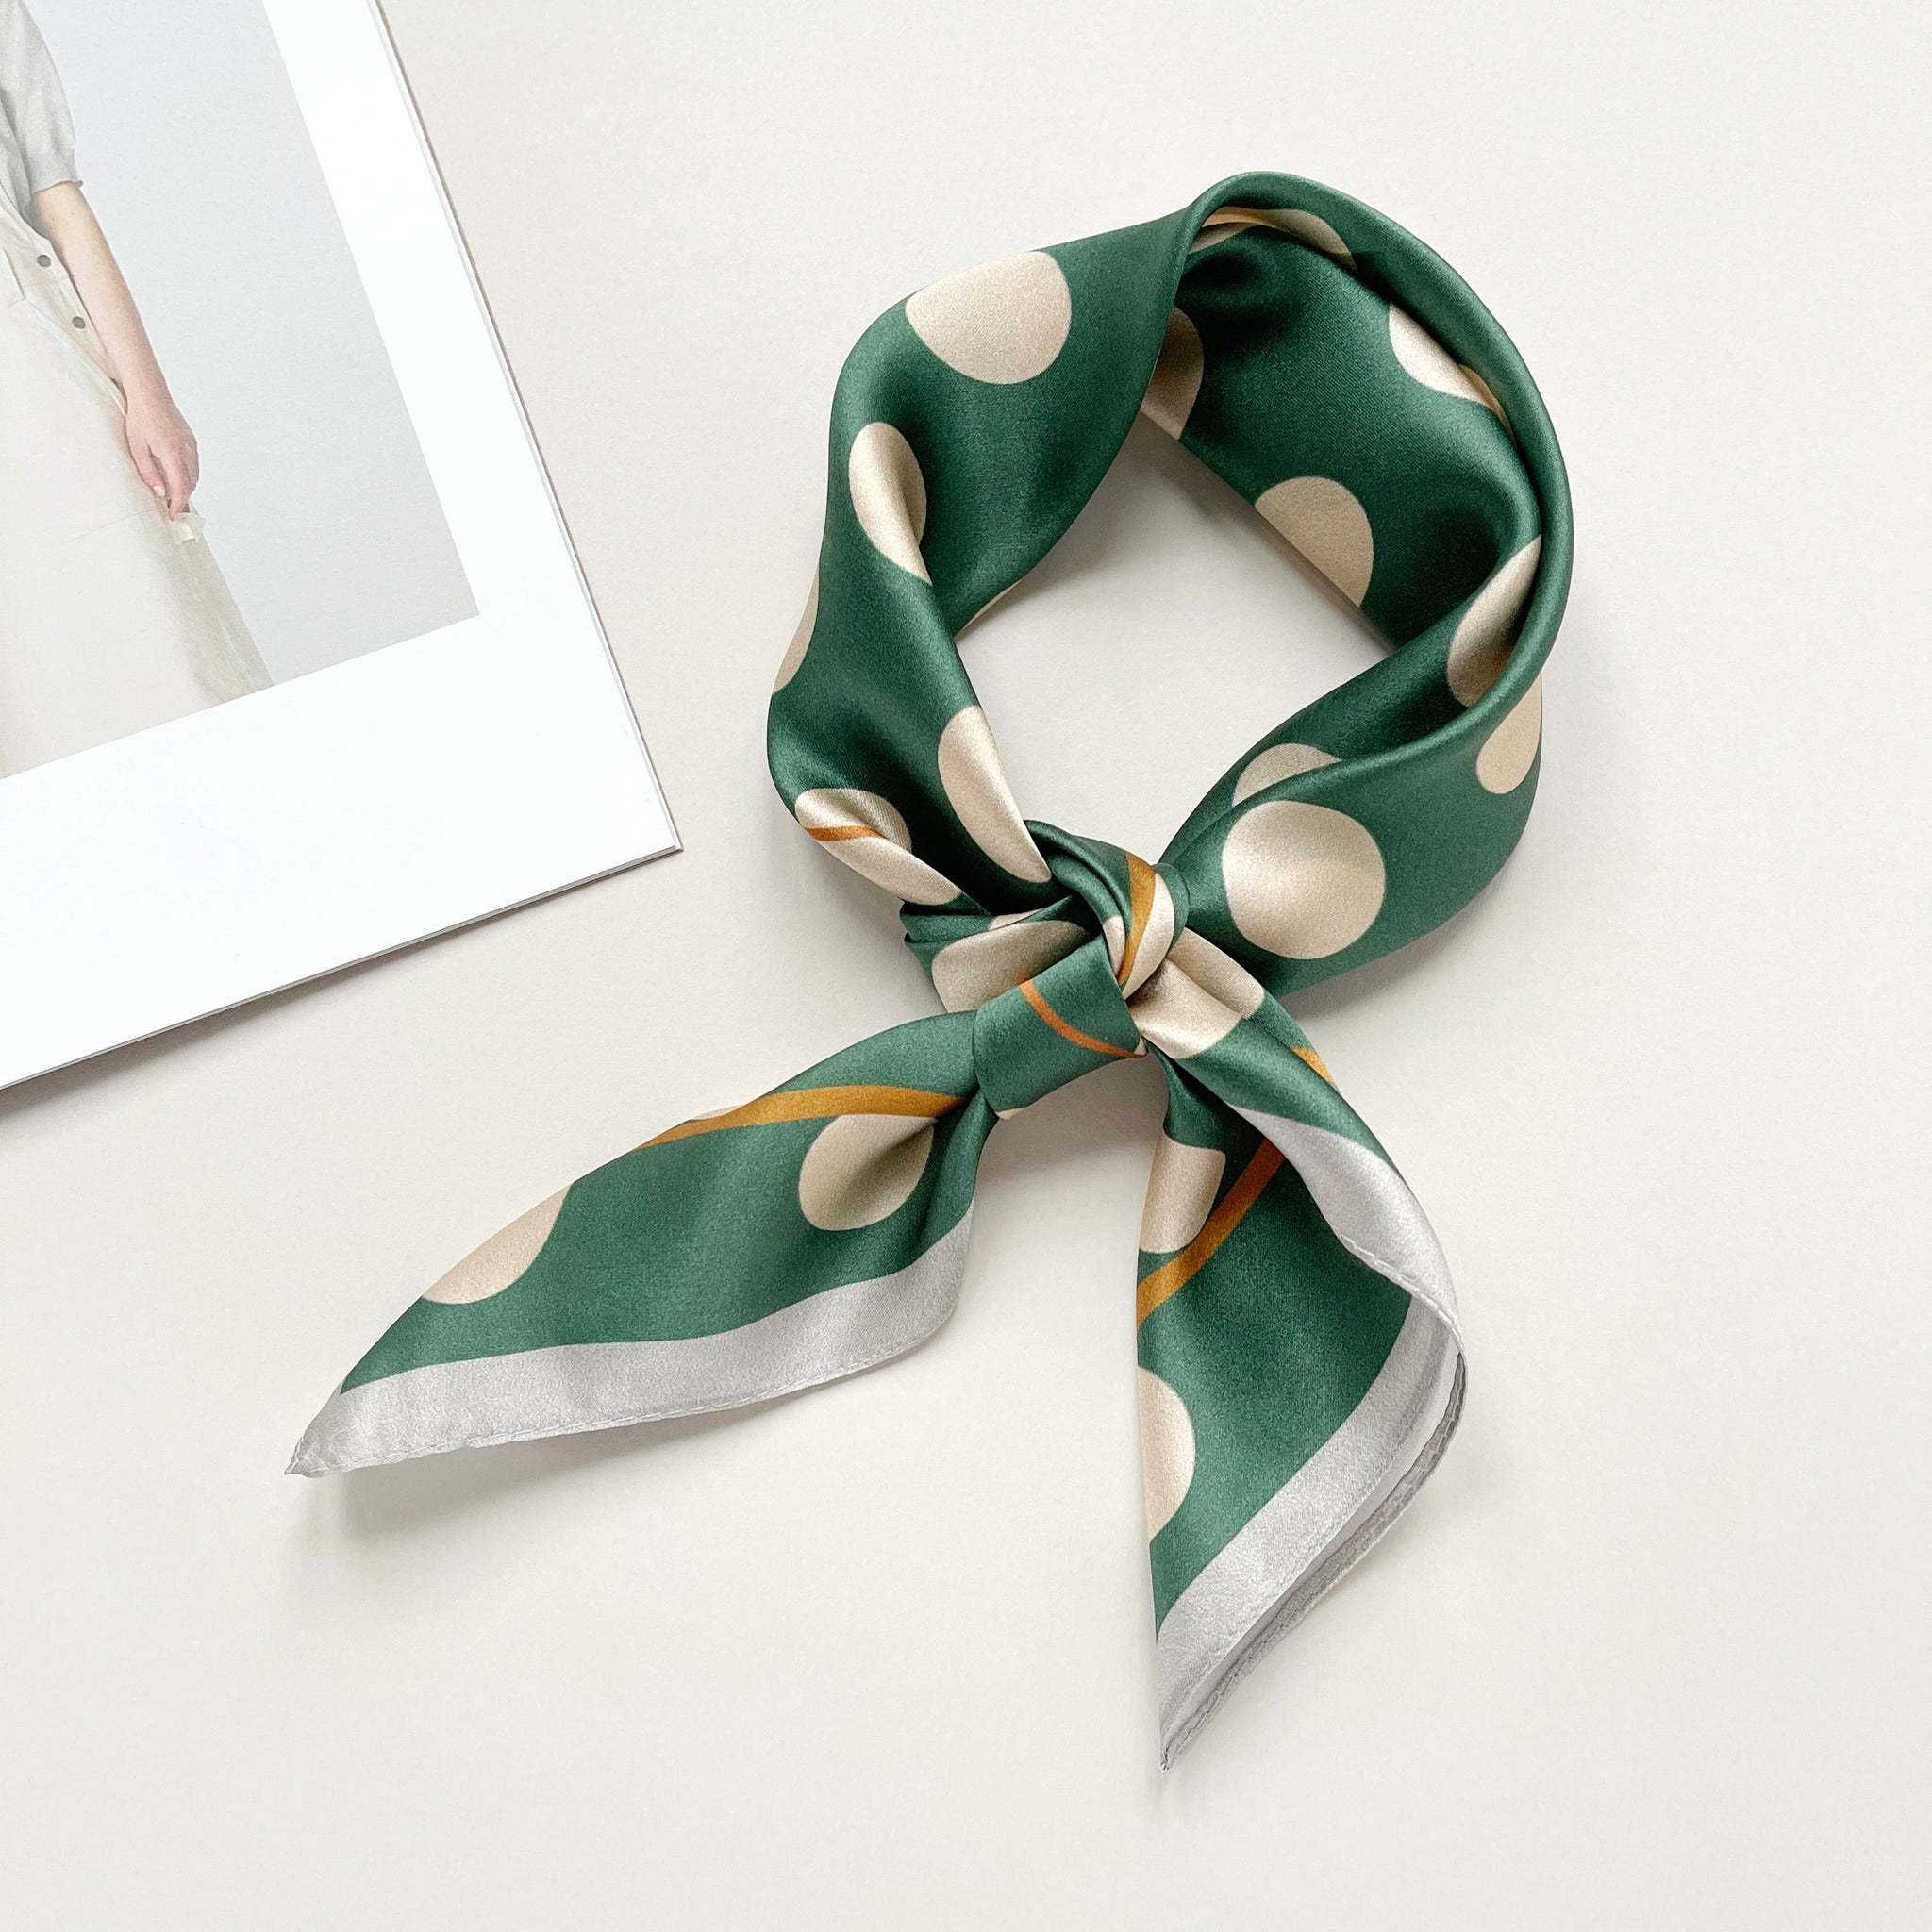 a jade green silk scarf bandana featuring light beige polka dot print, knotted as a neckerchief 